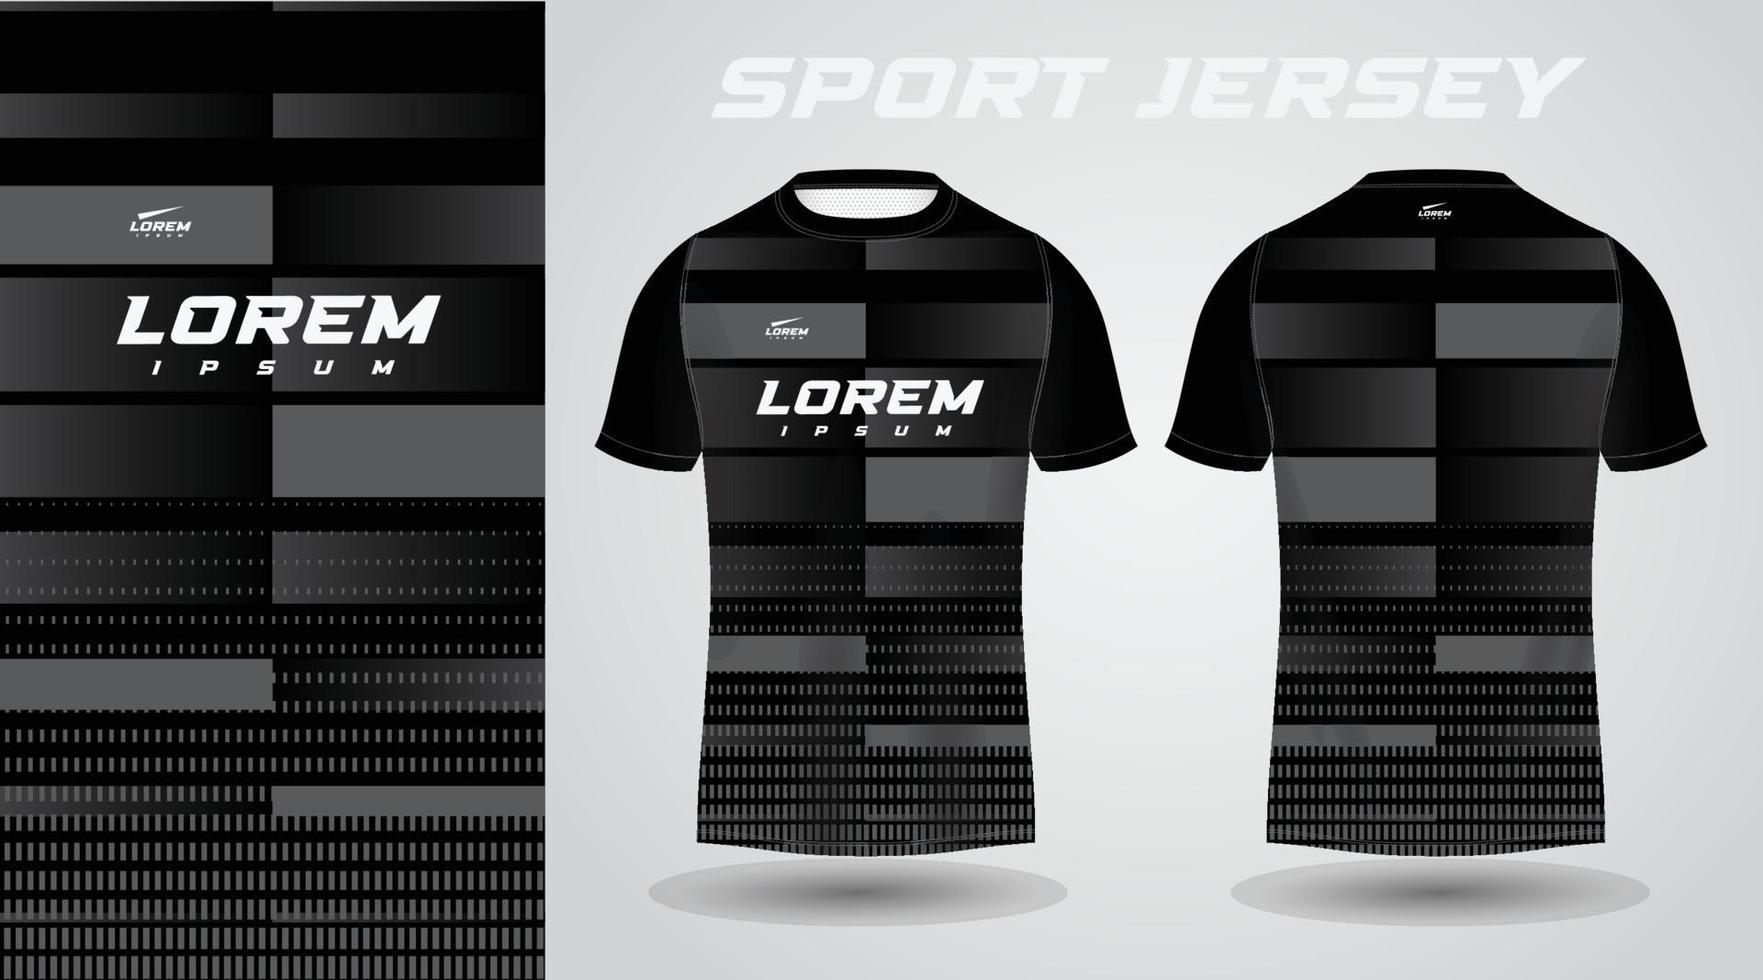 schwarzes T-Shirt Sport-Jersey-Design vektor